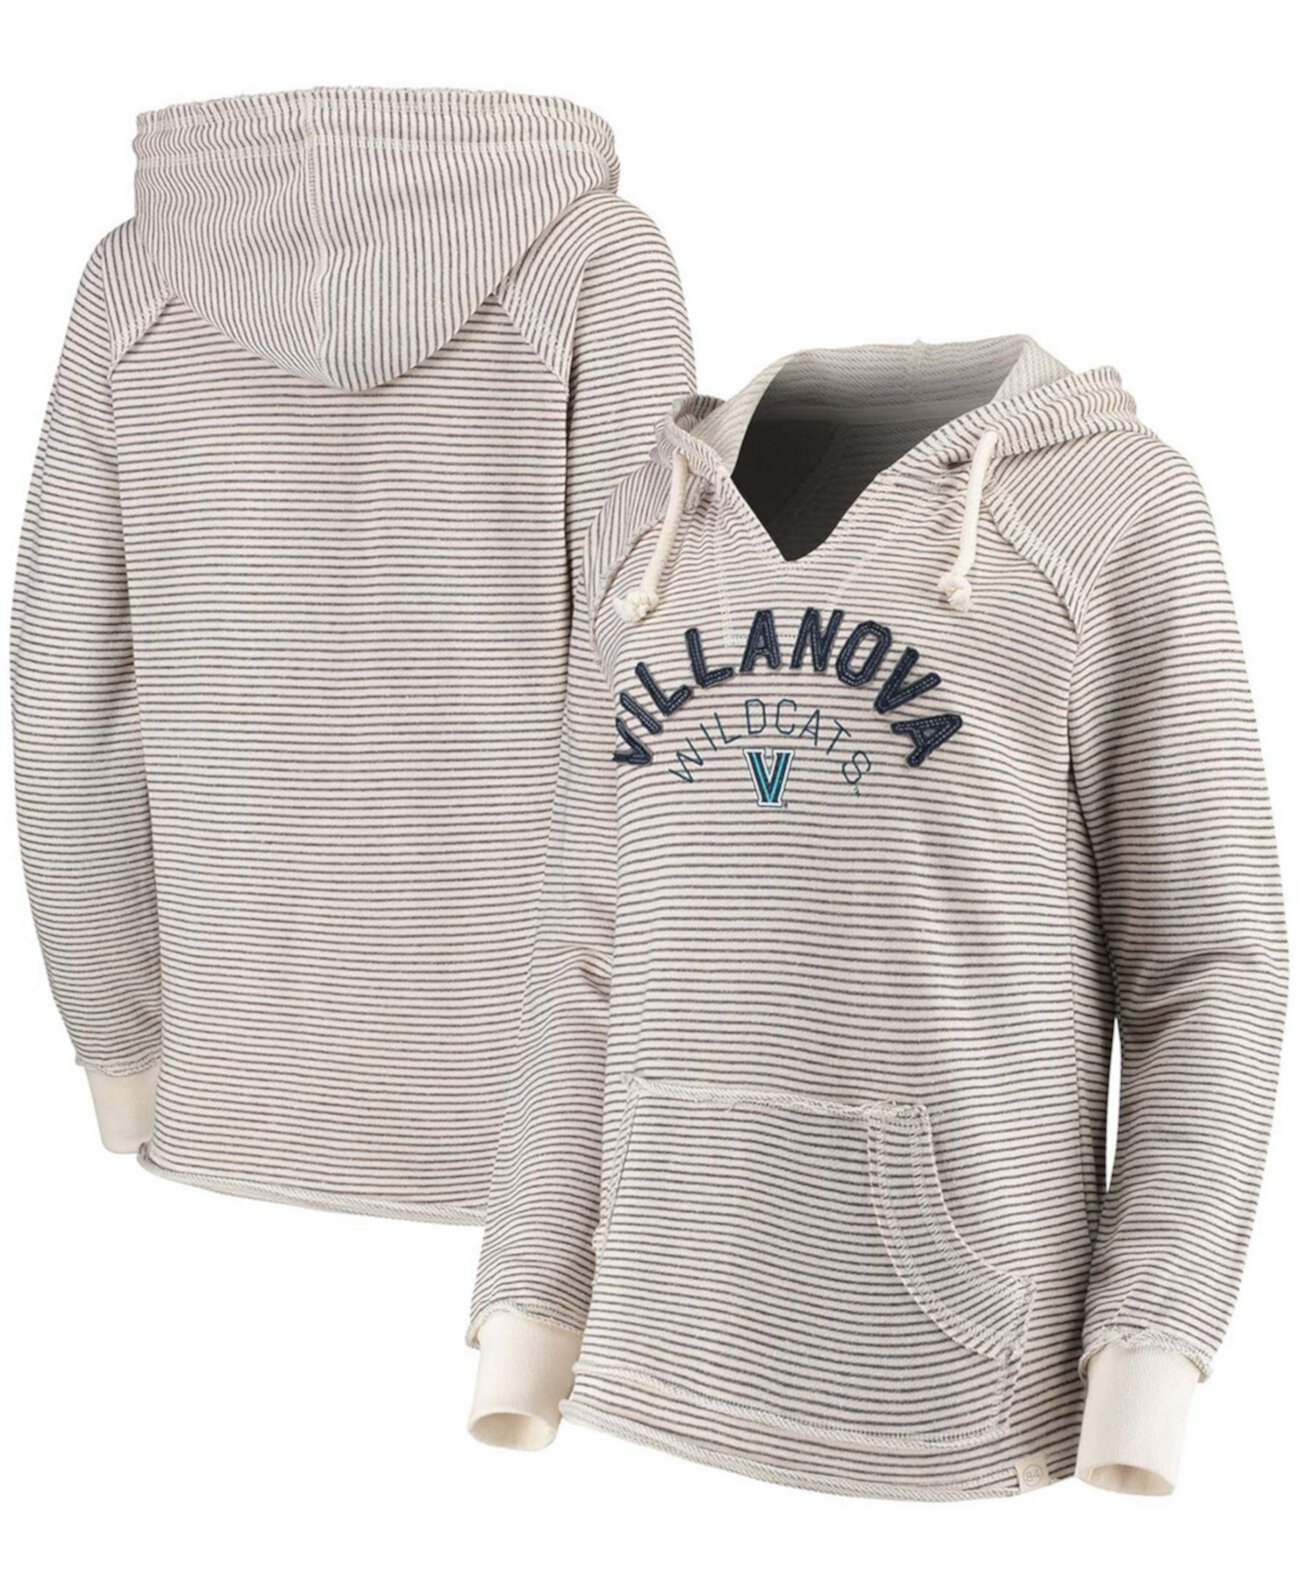 Женский кремовый пуловер с V-образным вырезом в полоску Villanova Wildcats, толстовка с капюшоном из френч терри Blue 84